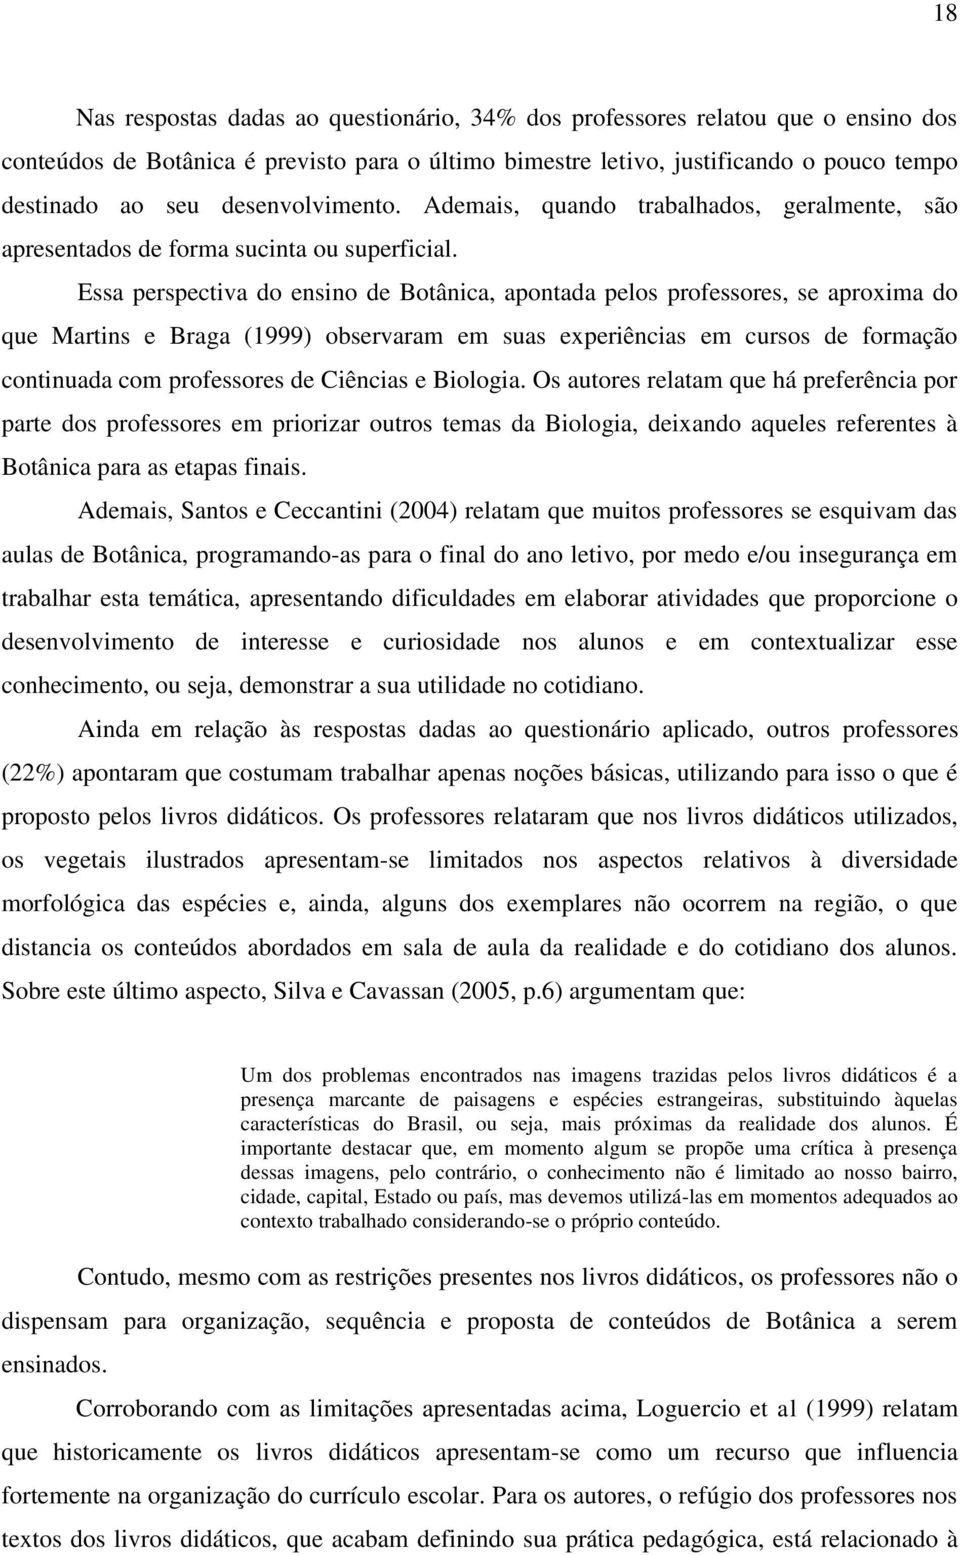 Essa perspectiva do ensino de Botânica, apontada pelos professores, se aproxima do que Martins e Braga (1999) observaram em suas experiências em cursos de formação continuada com professores de